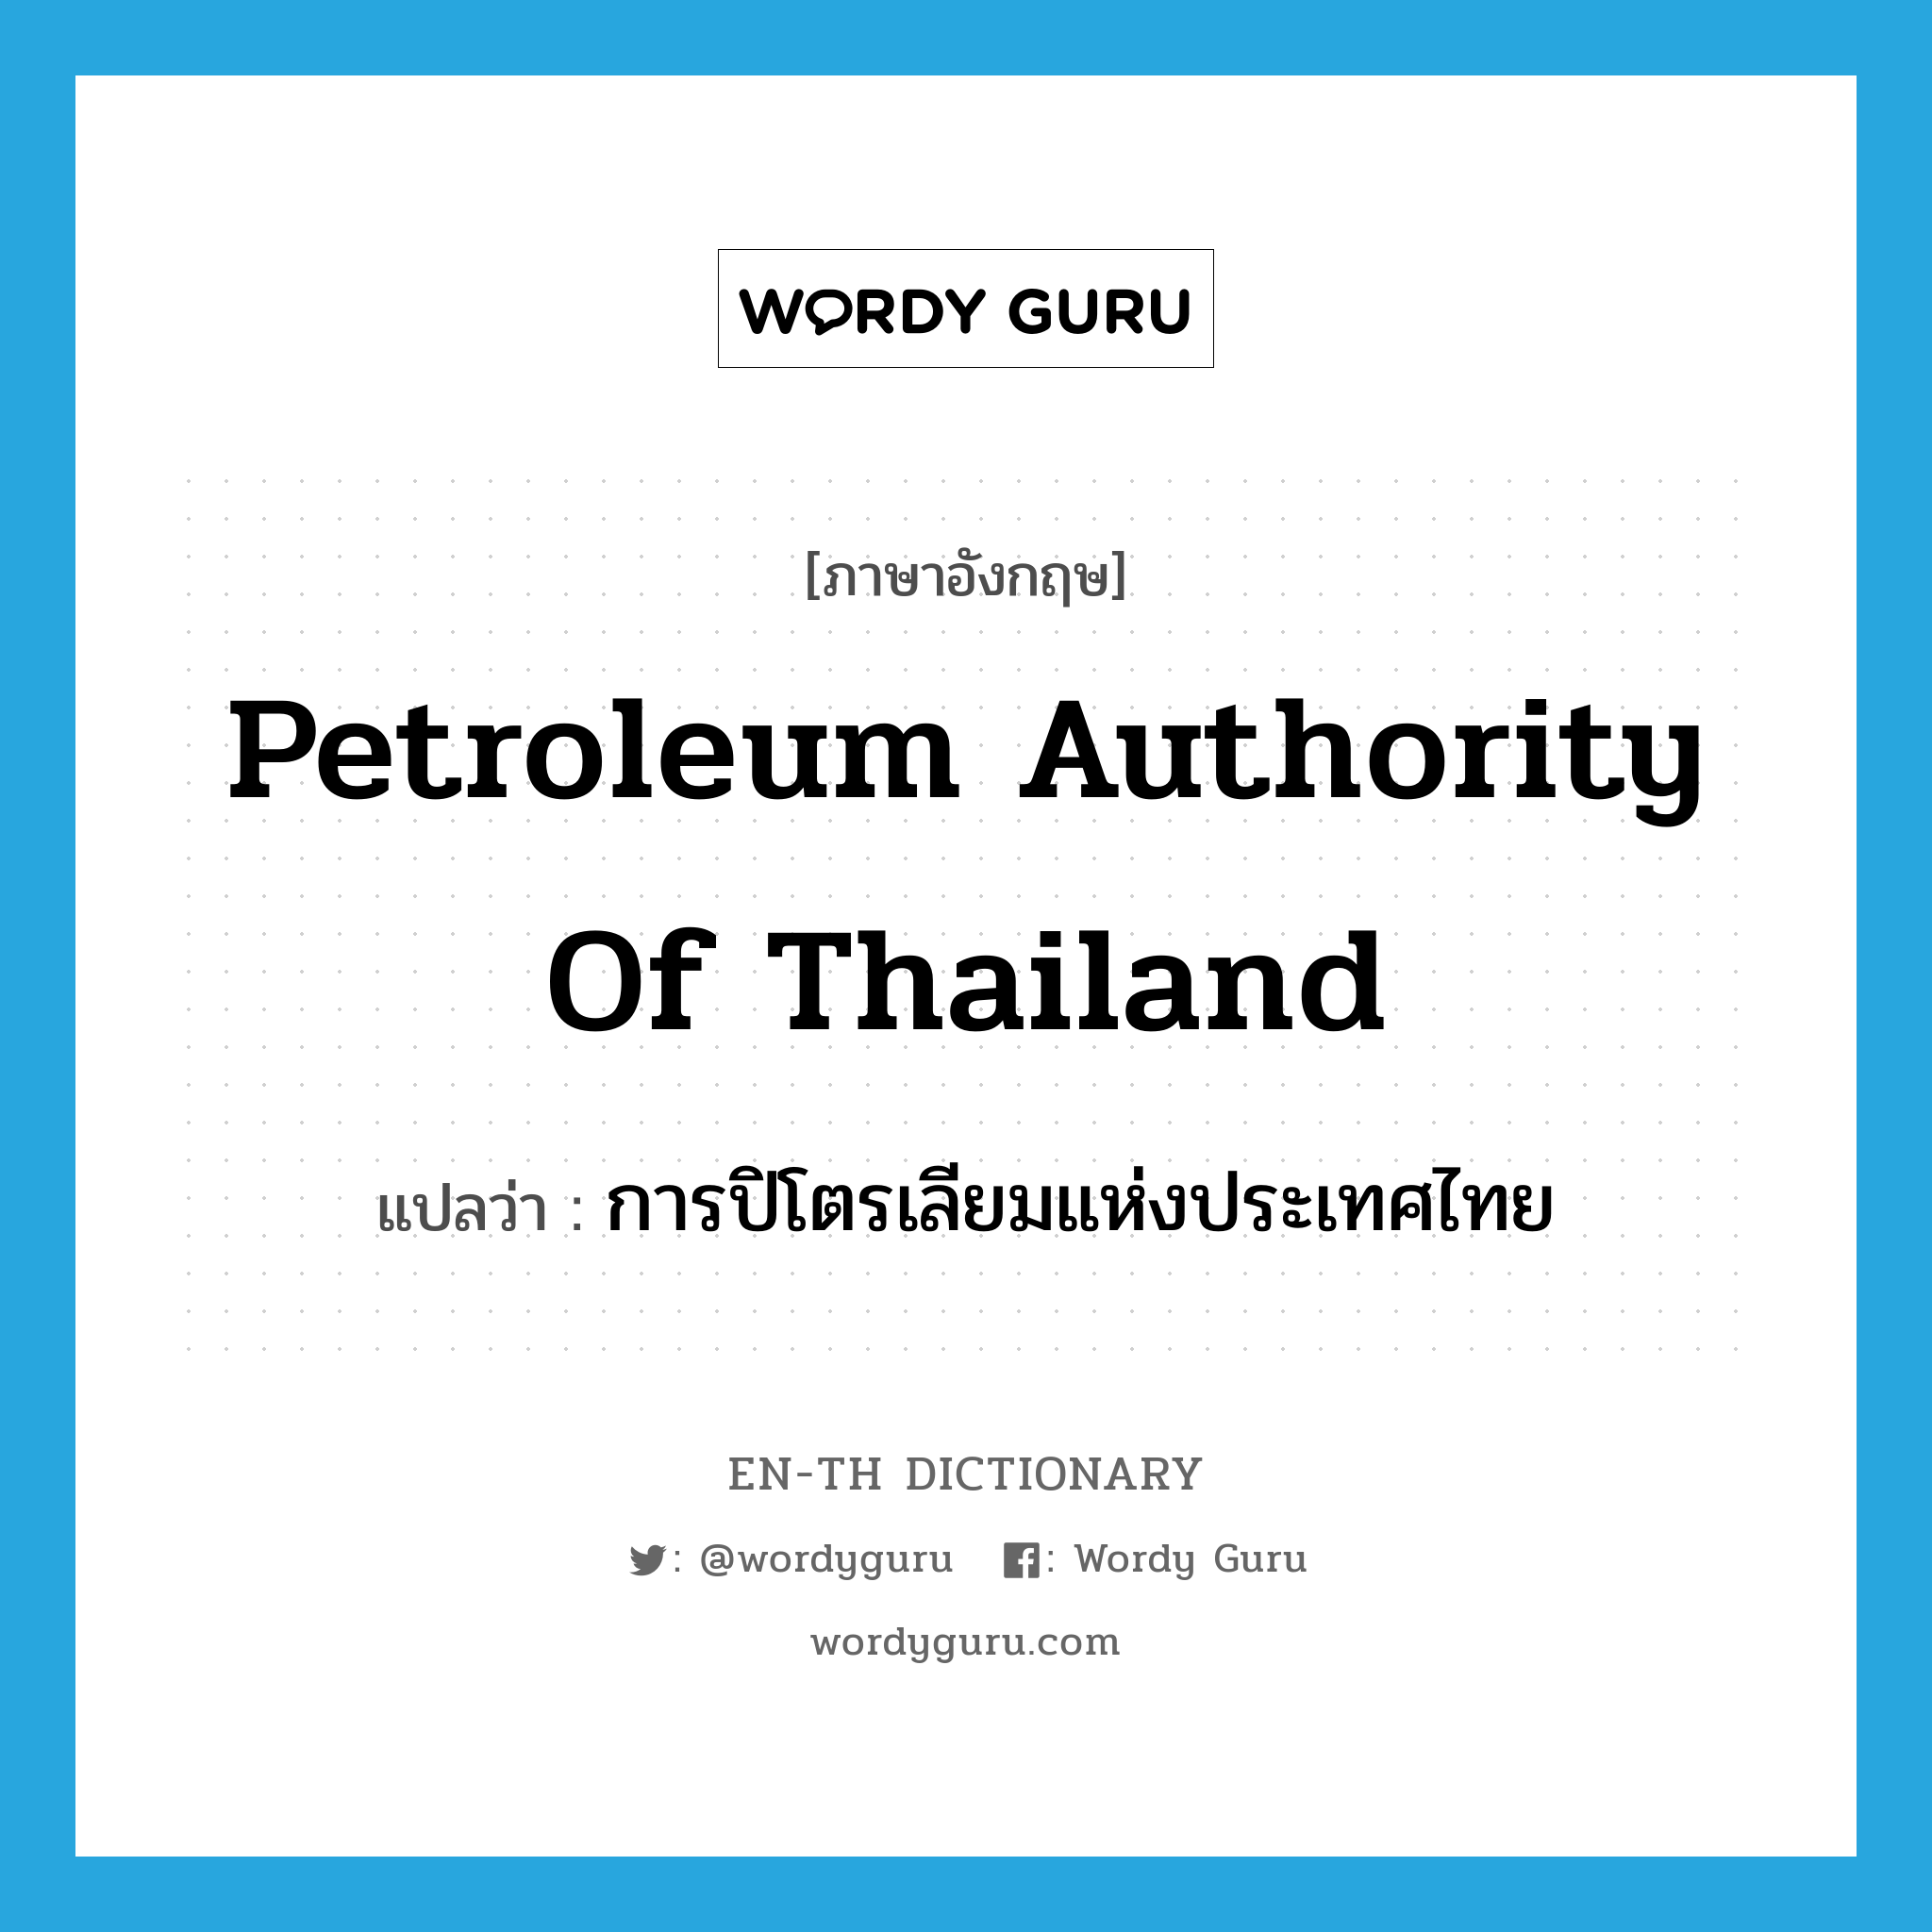 การปิโตรเลียมแห่งประเทศไทย ภาษาอังกฤษ?, คำศัพท์ภาษาอังกฤษ การปิโตรเลียมแห่งประเทศไทย แปลว่า Petroleum Authority of Thailand ประเภท N หมวด N